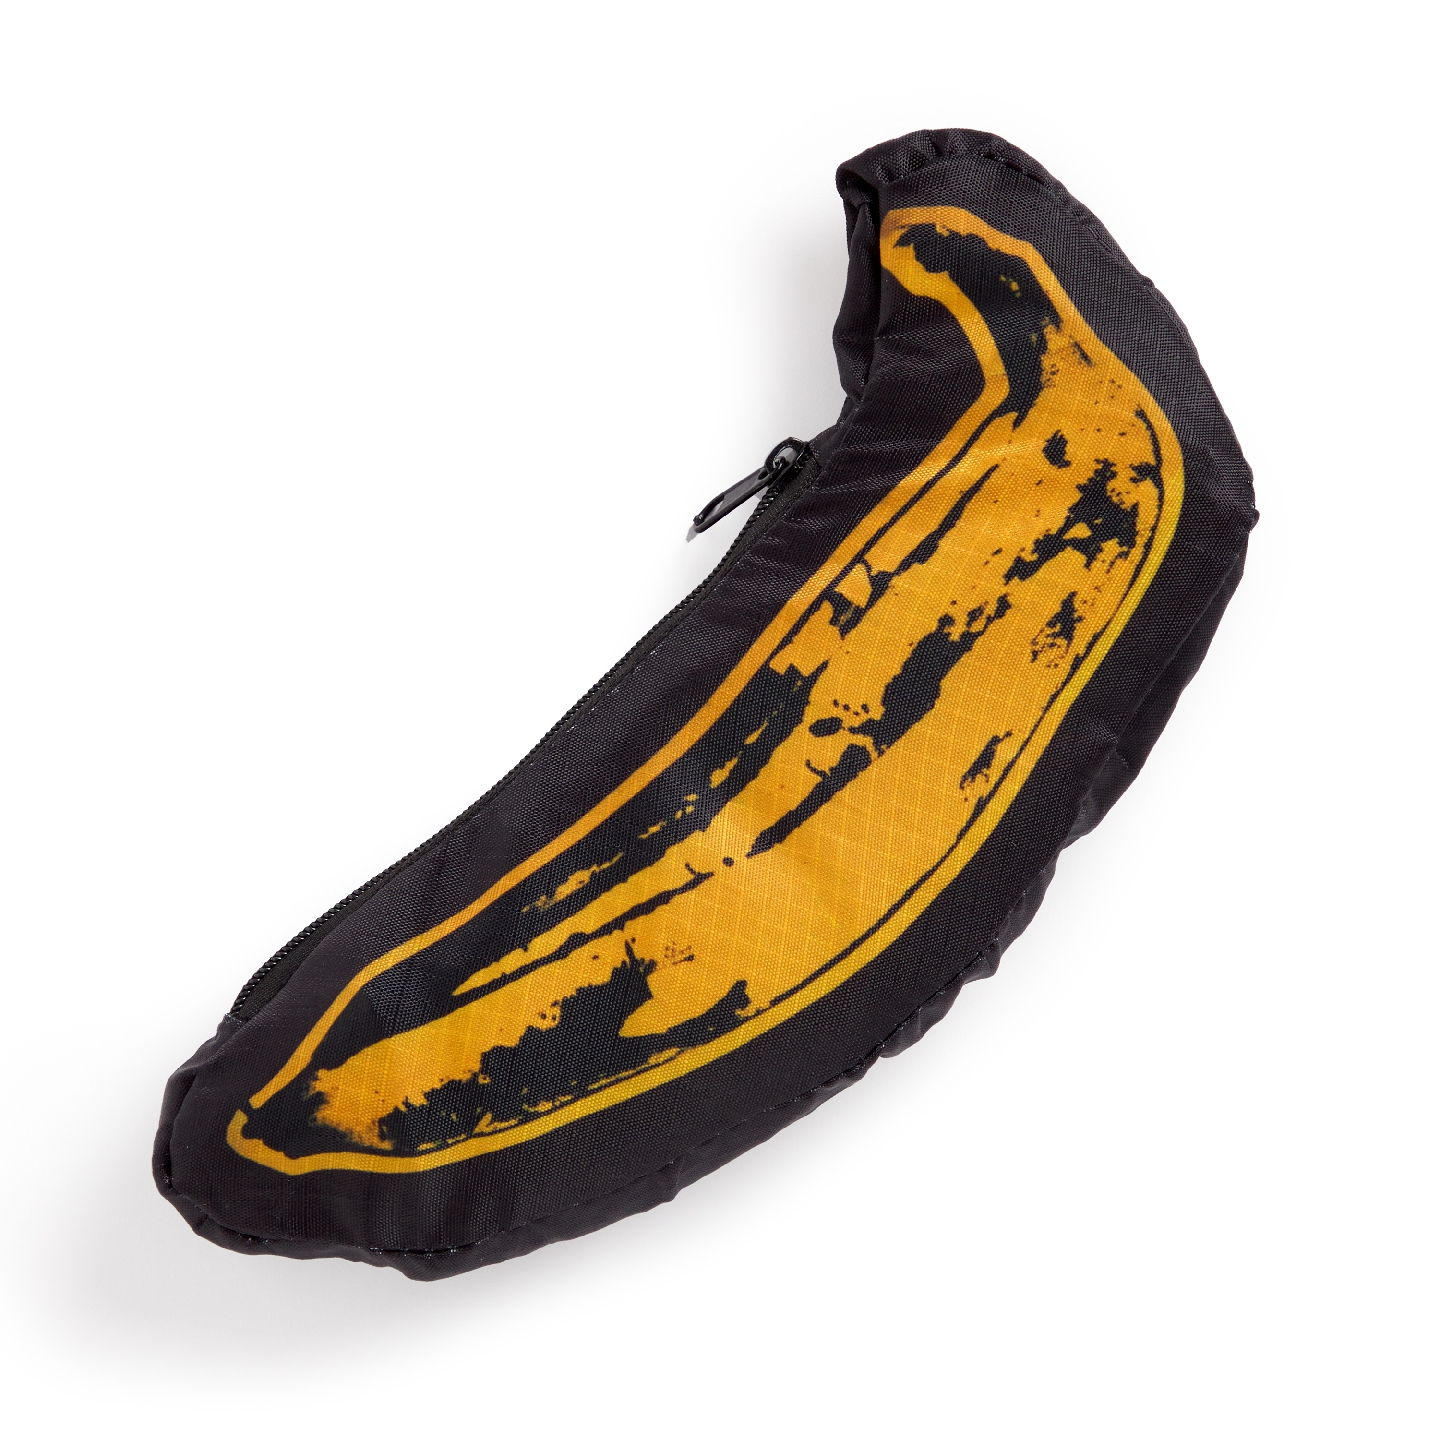 Andy Warhol Banana Reusable Bag